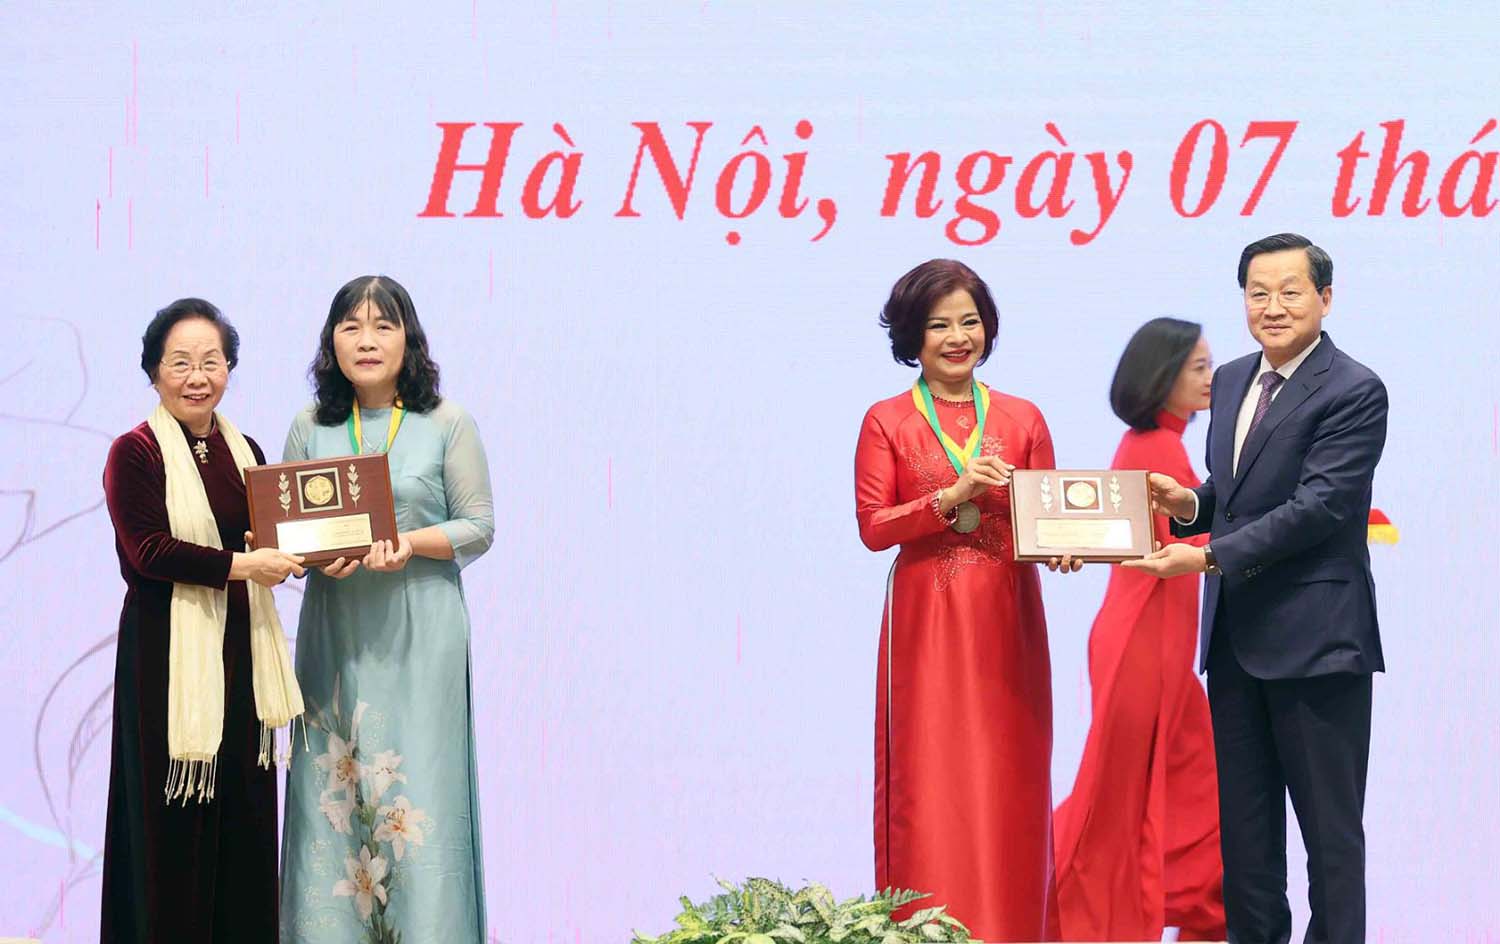 Phó Thủ tướng Chính phủ Lê Minh Khái và nguyên Phó Chủ tịch nước Nguyễn Thị Doan trao 2 giải Kovalevskaia cho 2 nhà khoa học nữ có thành tích nghiên cứu khoa học xuất sắc. Ảnh: VGP